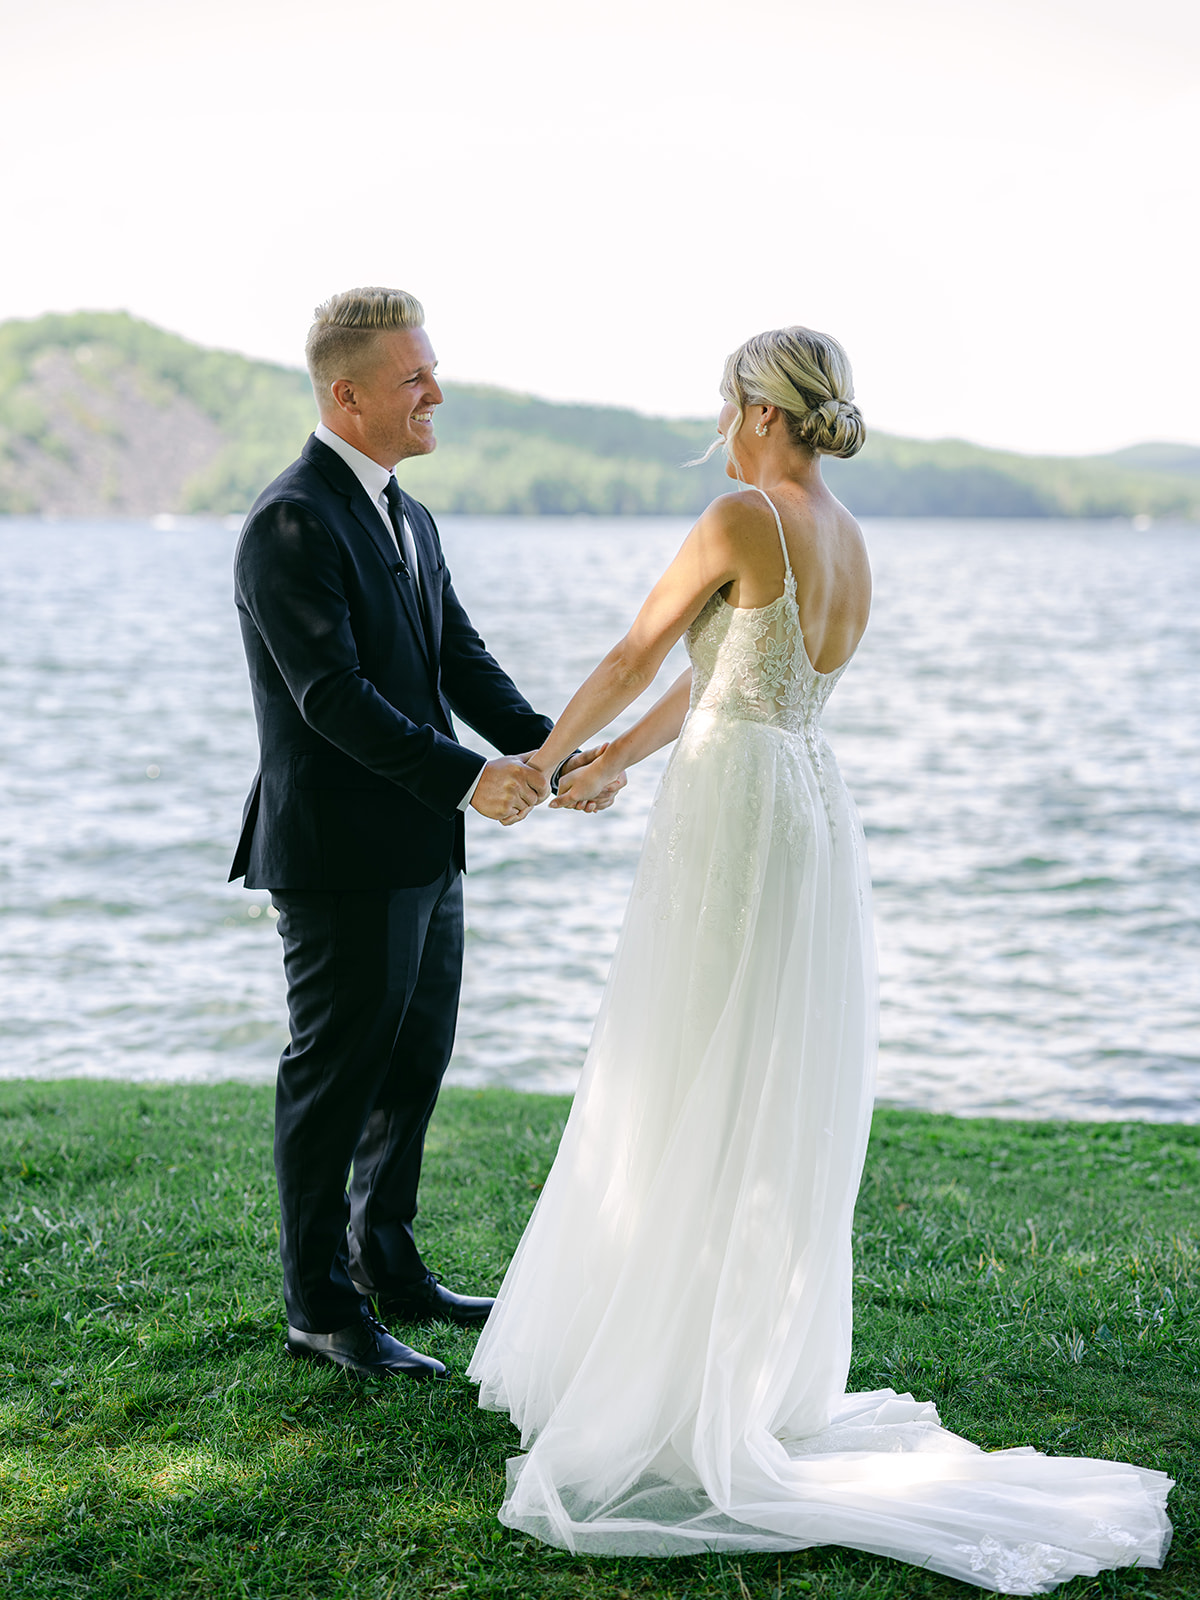 Wedding First Look at Lake Bomoseen